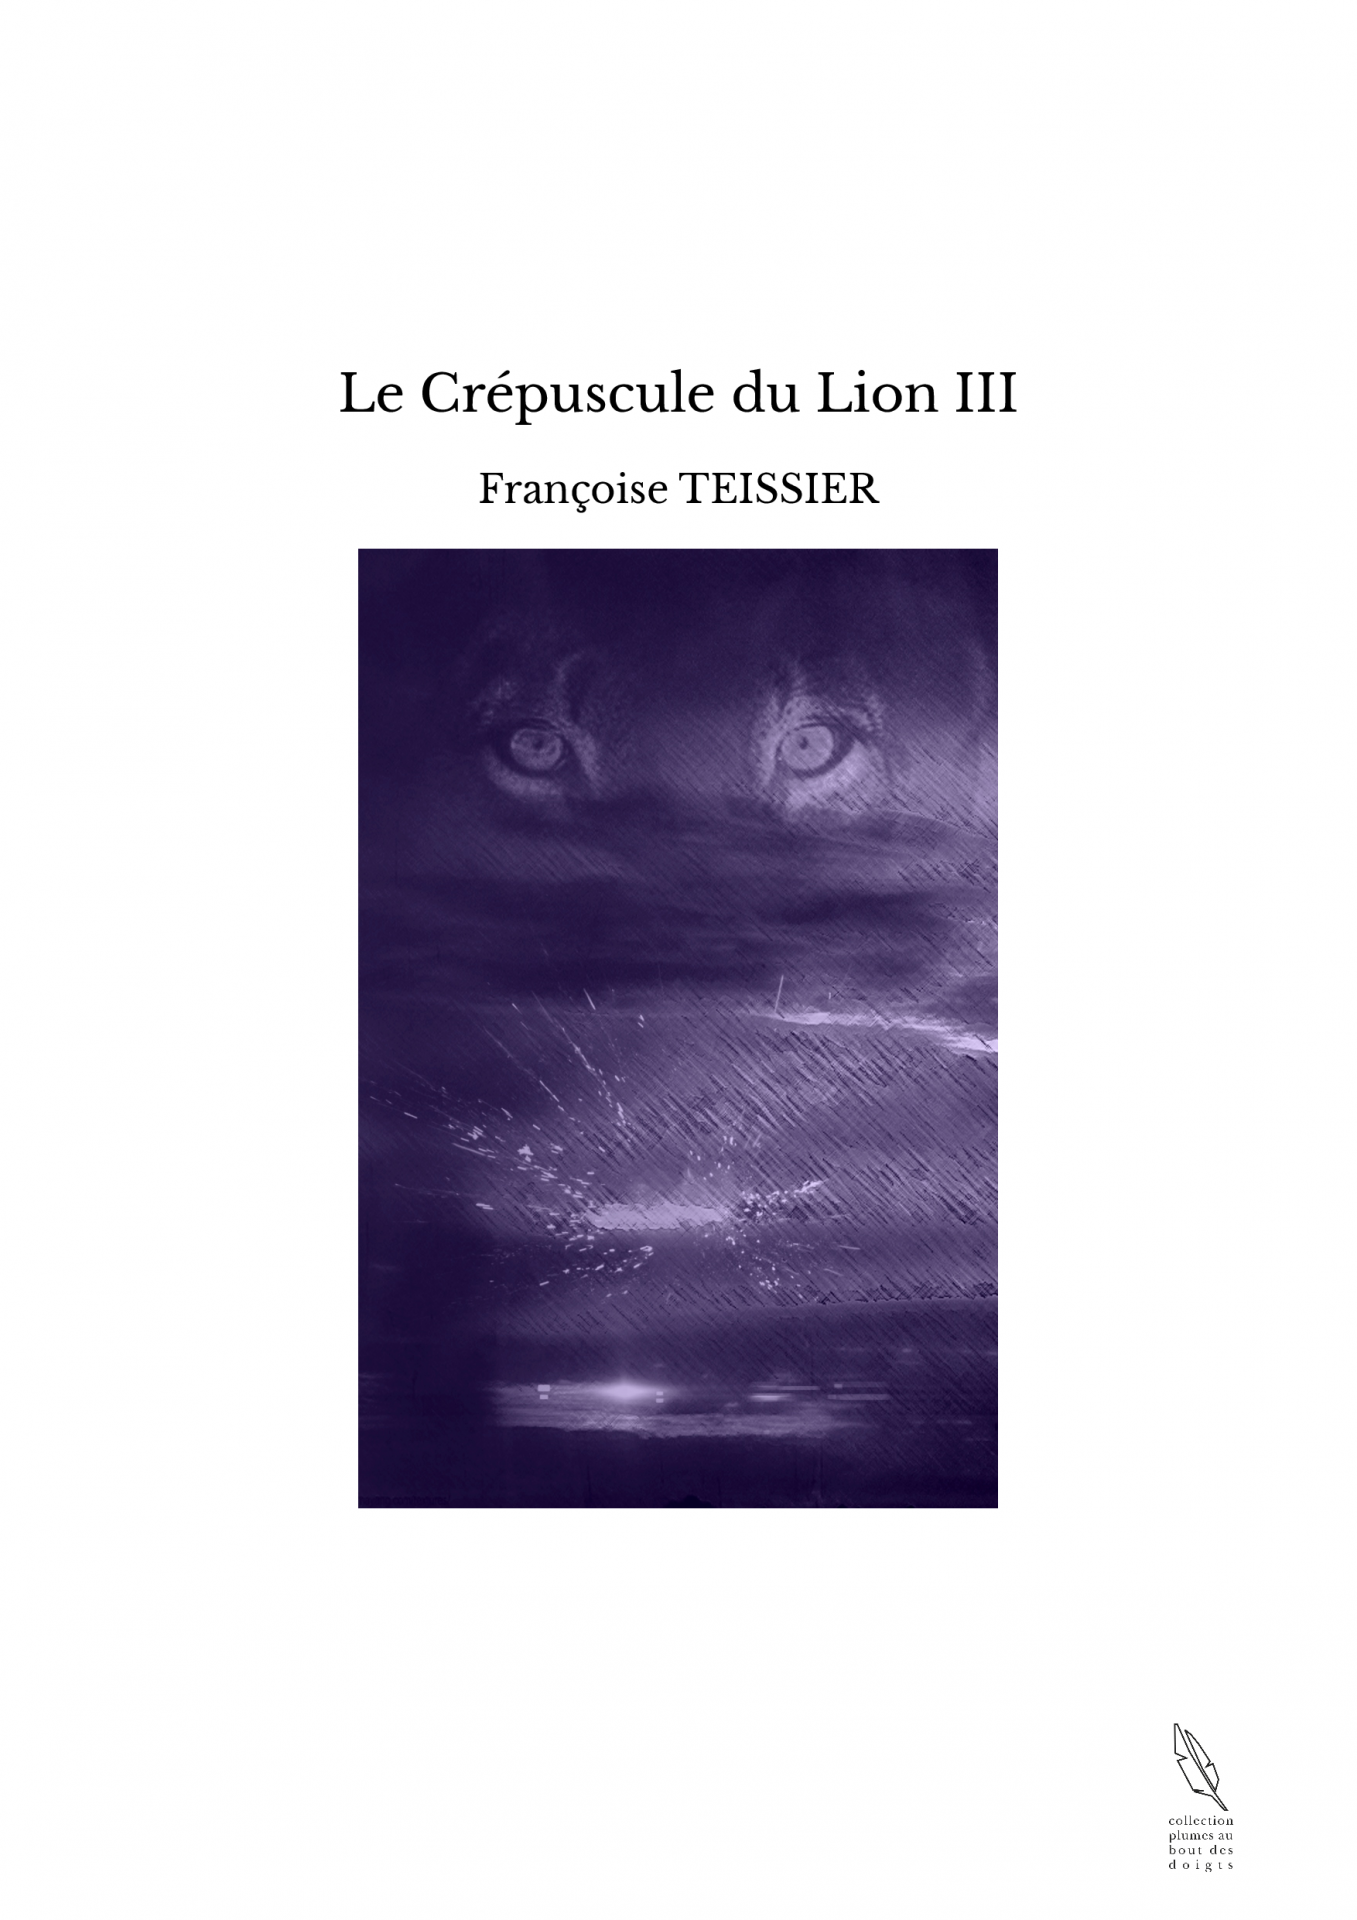 Le Crépuscule du Lion III